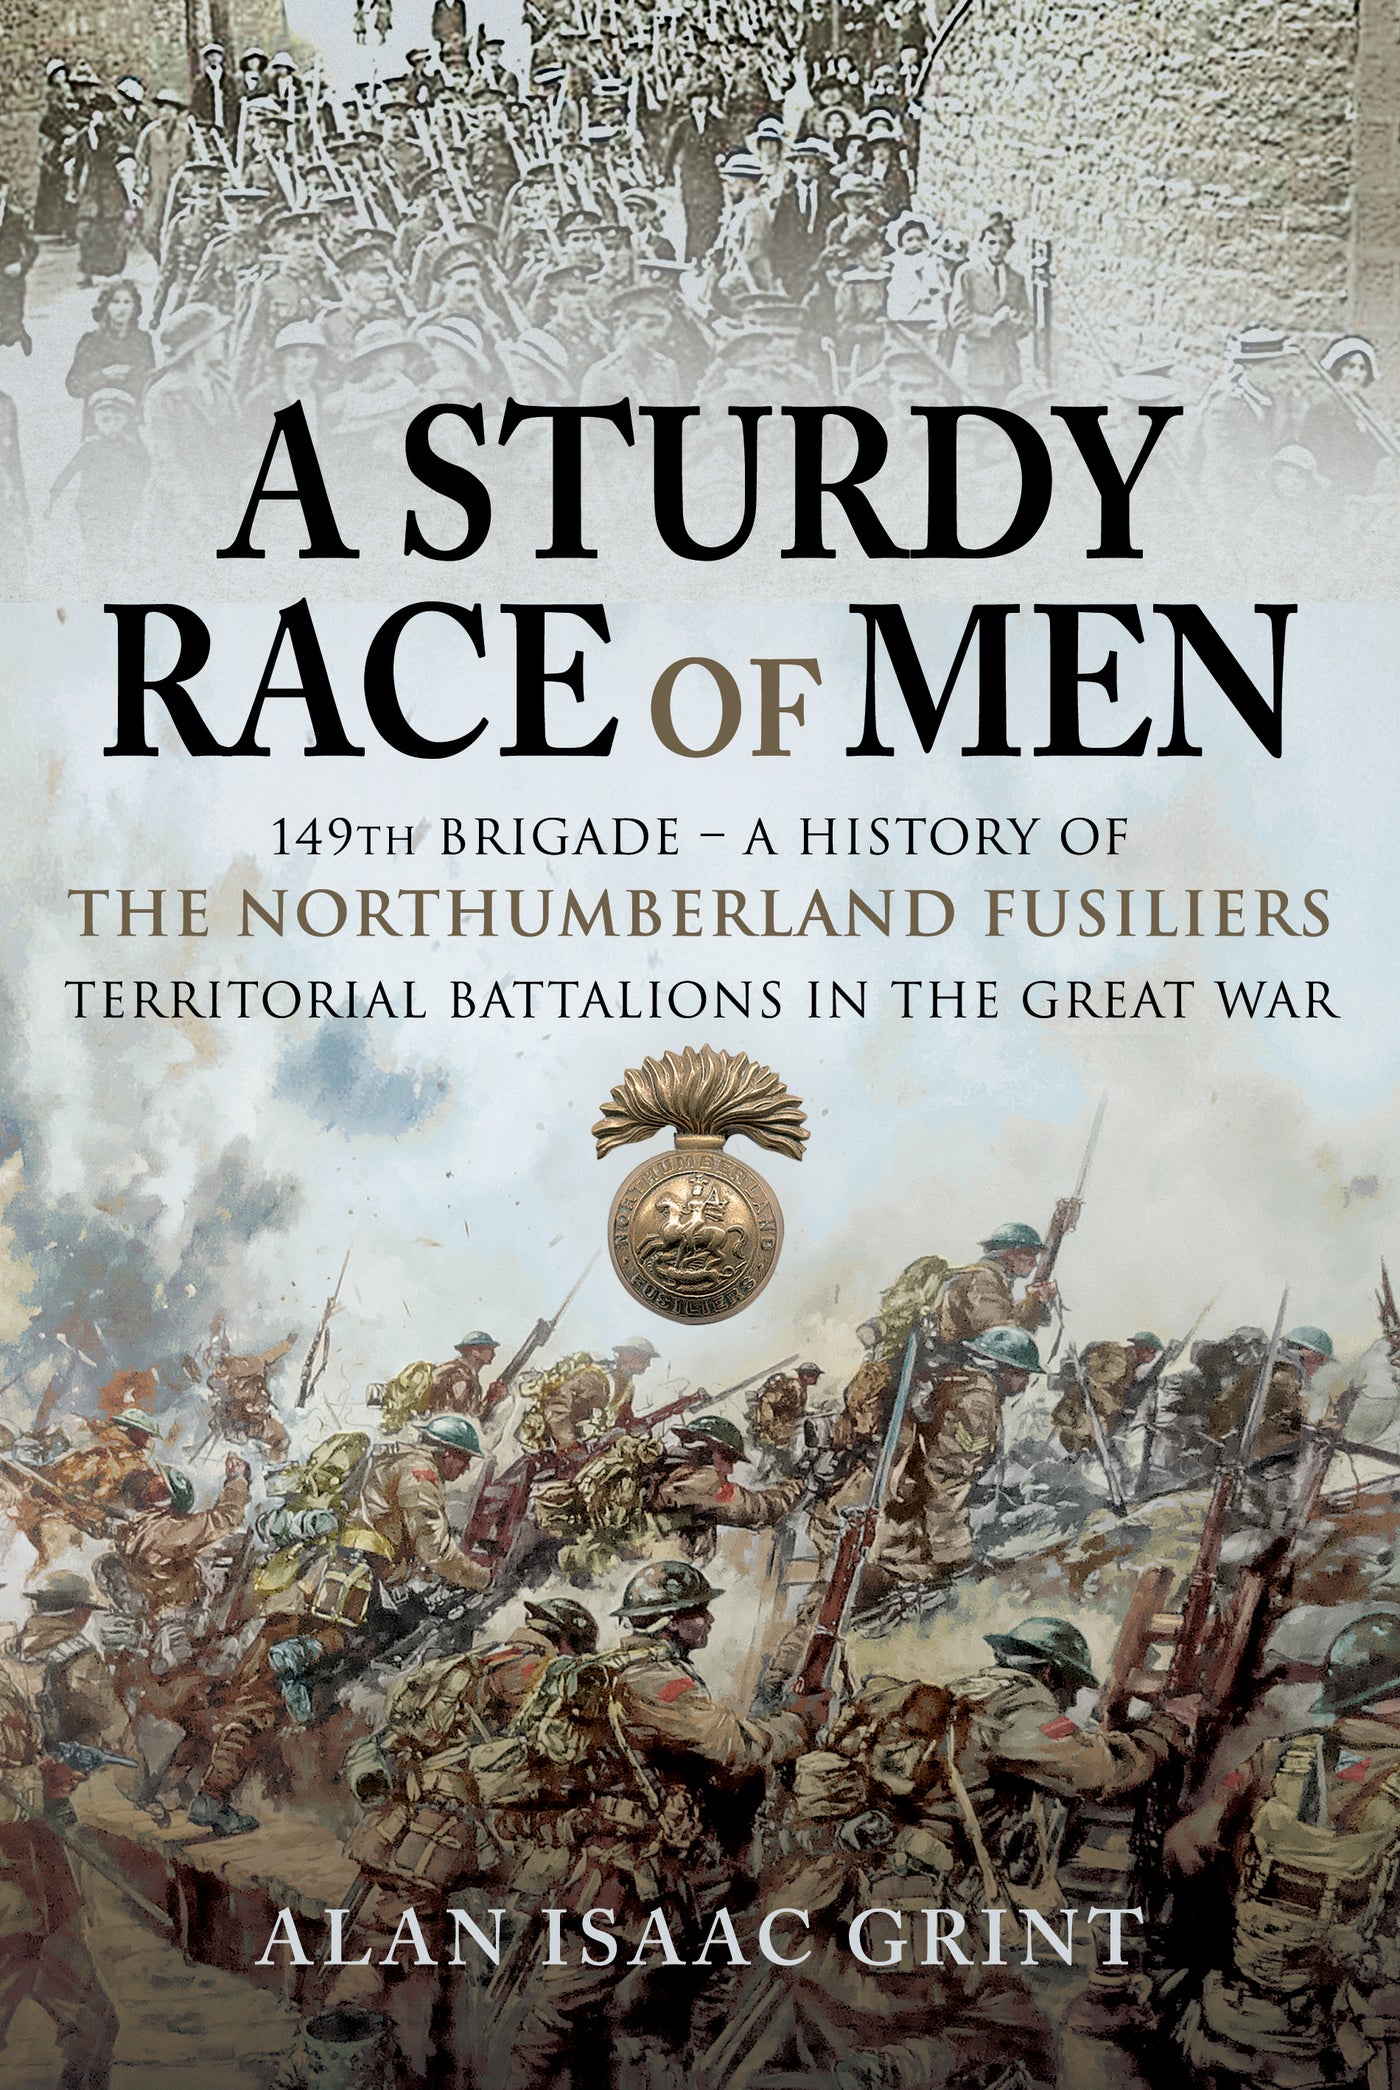 A Sturdy Race of Men – 149 Brigade